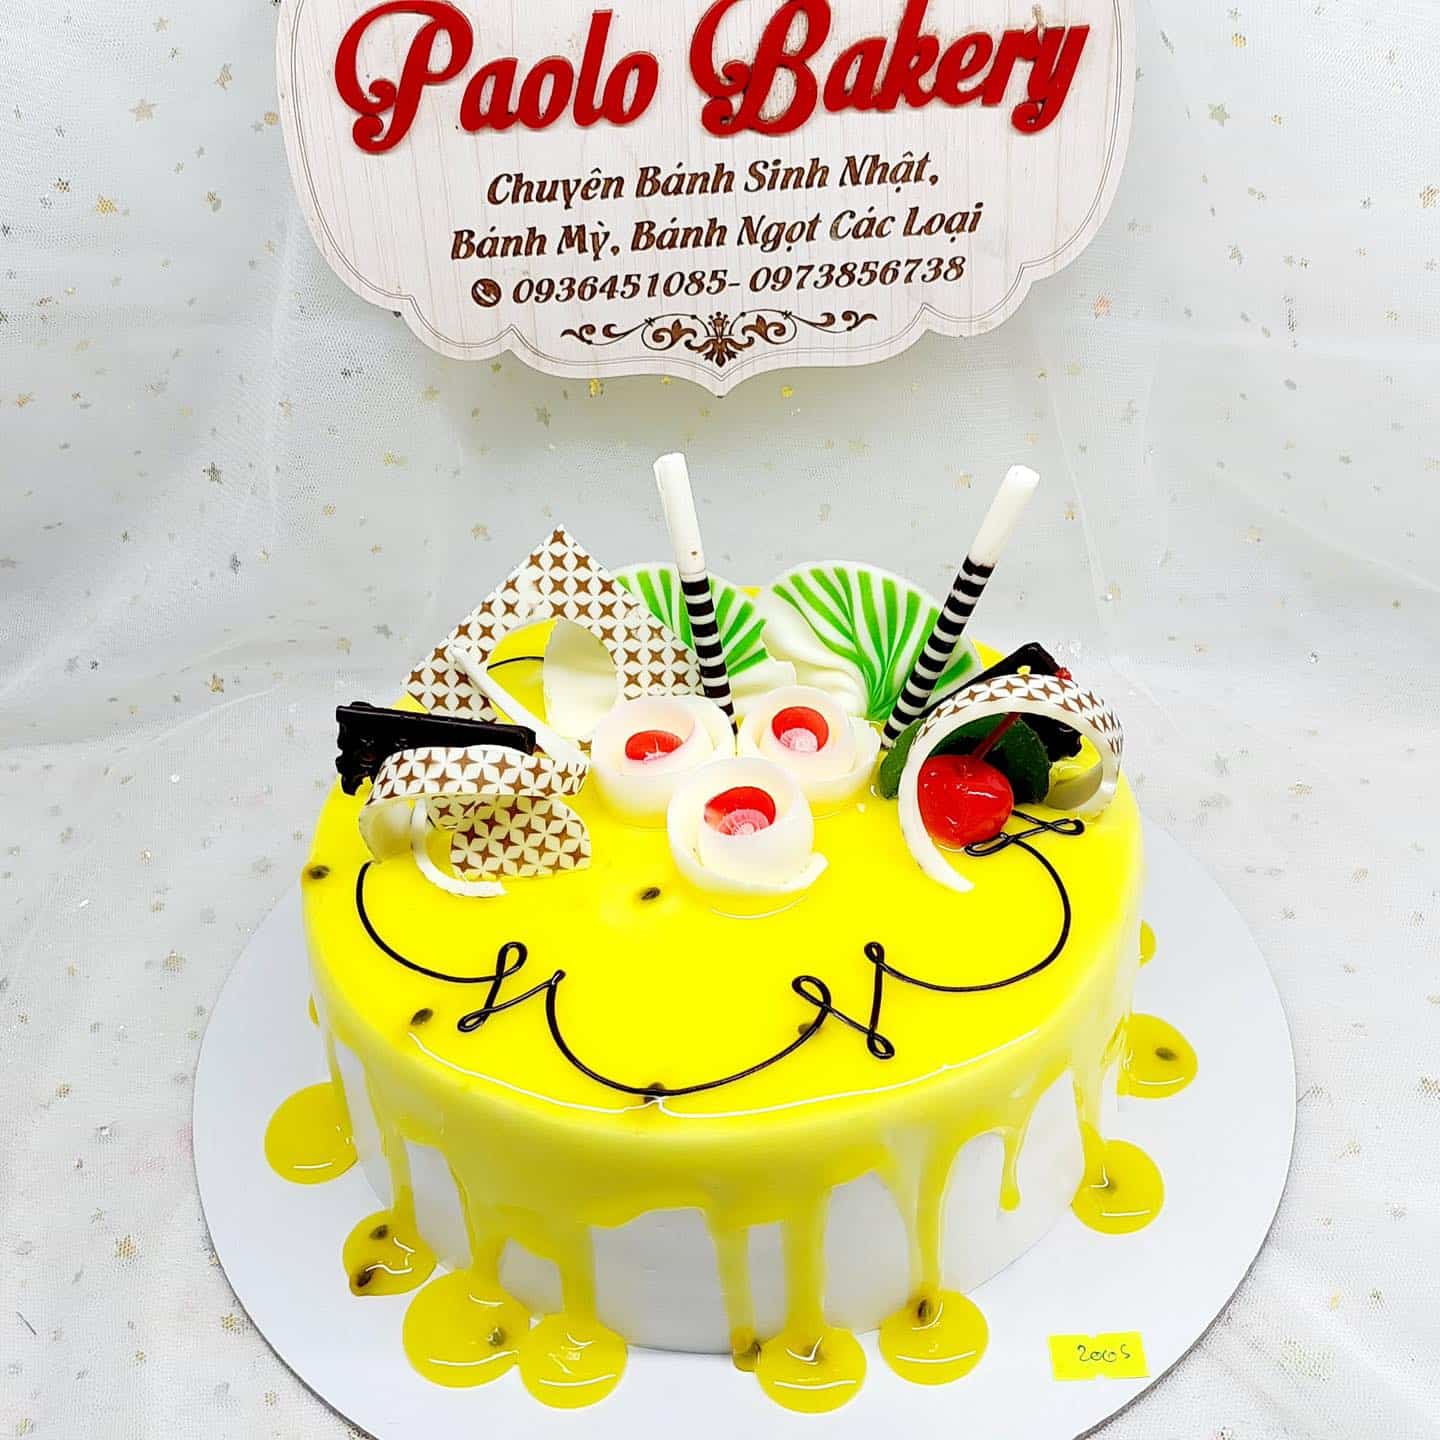 Paolo Bakery